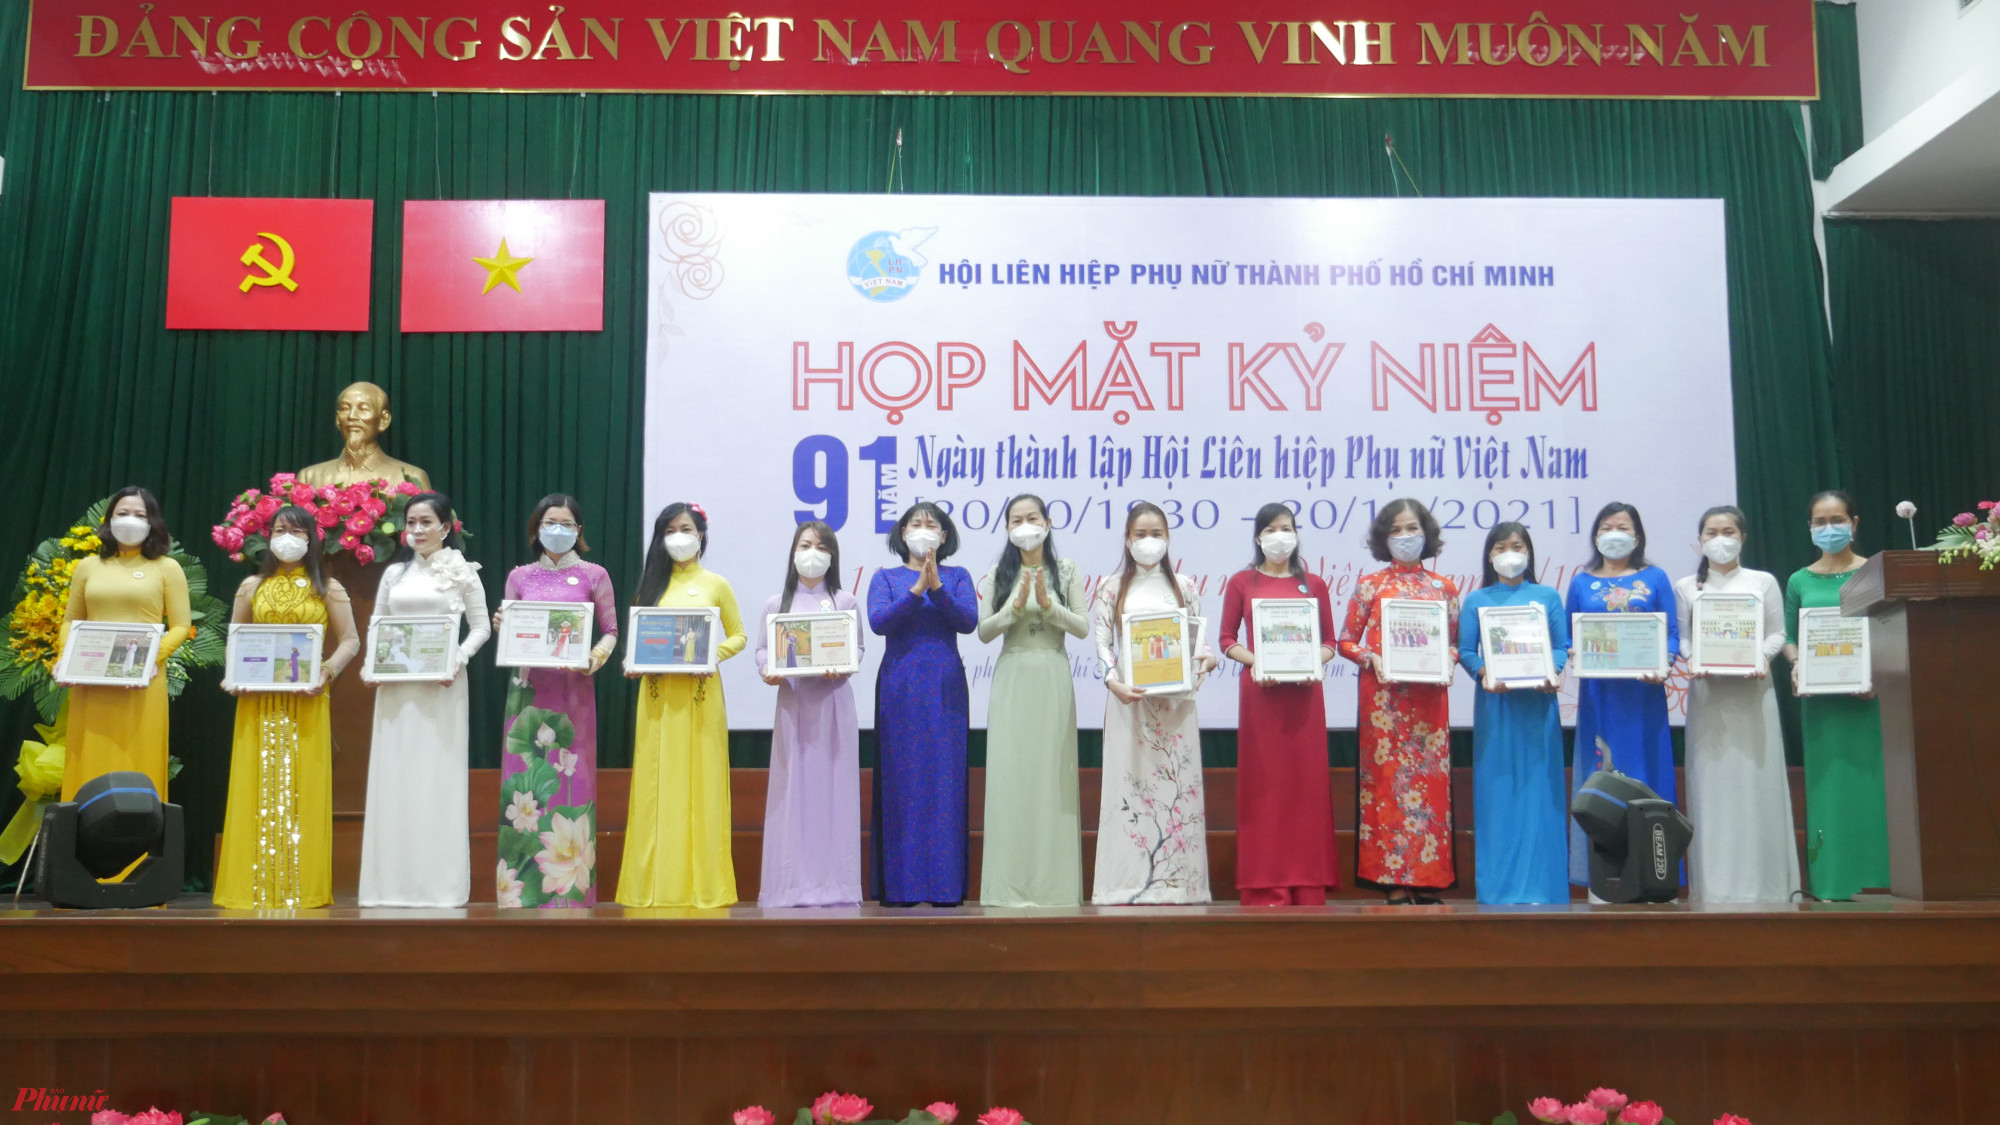 tại buổi họp mặt, Hội LHPN TPHCM trao giải cuộc thi ảnh đẹp áo dài chủ đề “Tự hào Phụ nữ Việt Nam. cuộc thi này đã được tổ chức vào dịp kỷ niệm Ngày quốc tế phụ nữ 8/3 thu hút sự tham gia của hàng ngàn tập thể, cá nhân; trong đó BTC cuộc thi đã chọn trao giải thưởng cho 18 tập thể và 18 cá nhân.